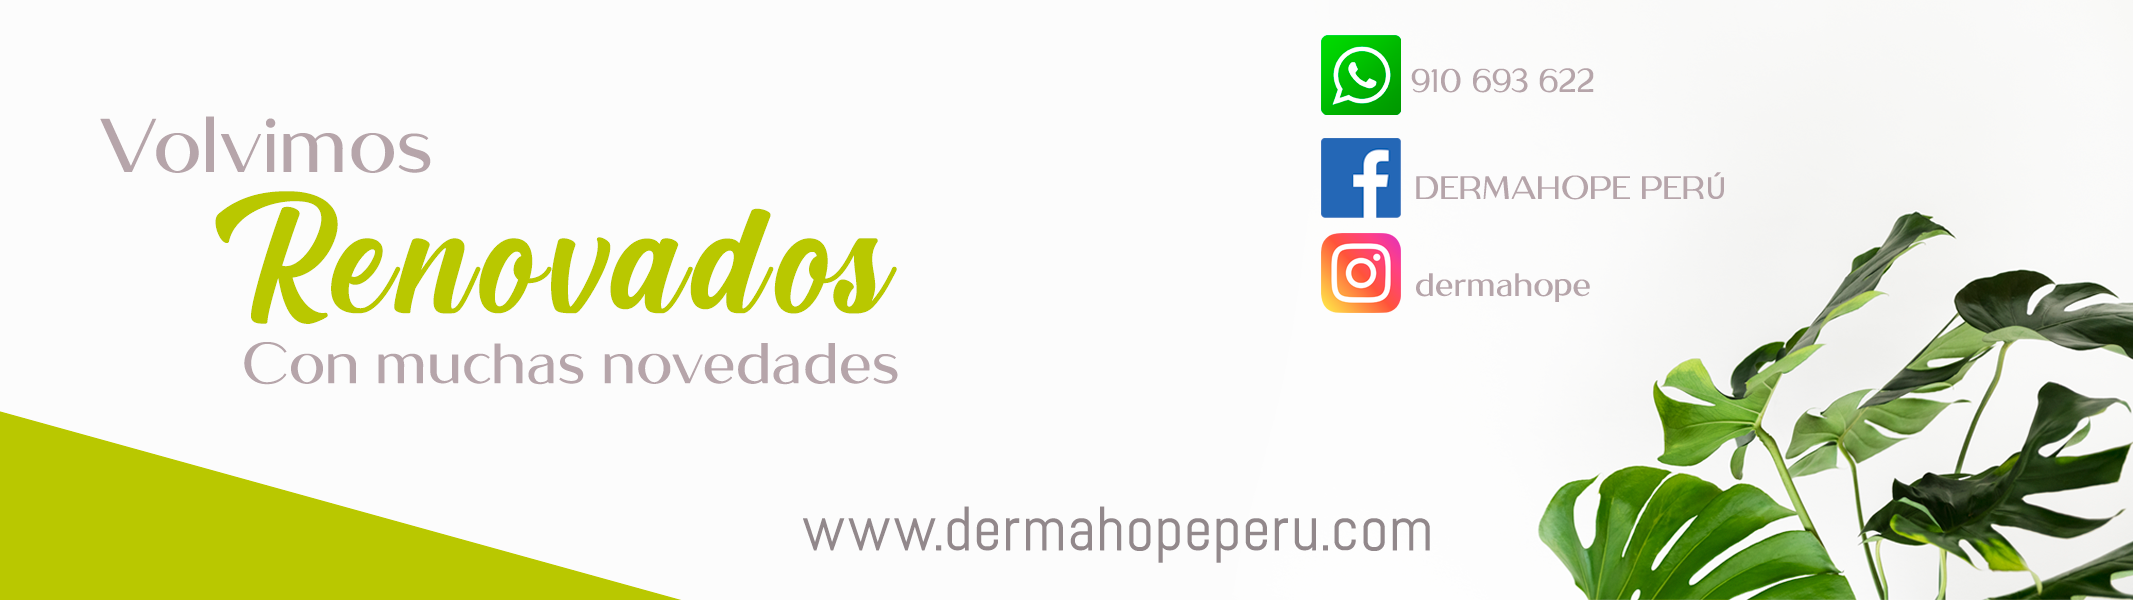 Renovados - DermaHopePeru - DermaHope Perú